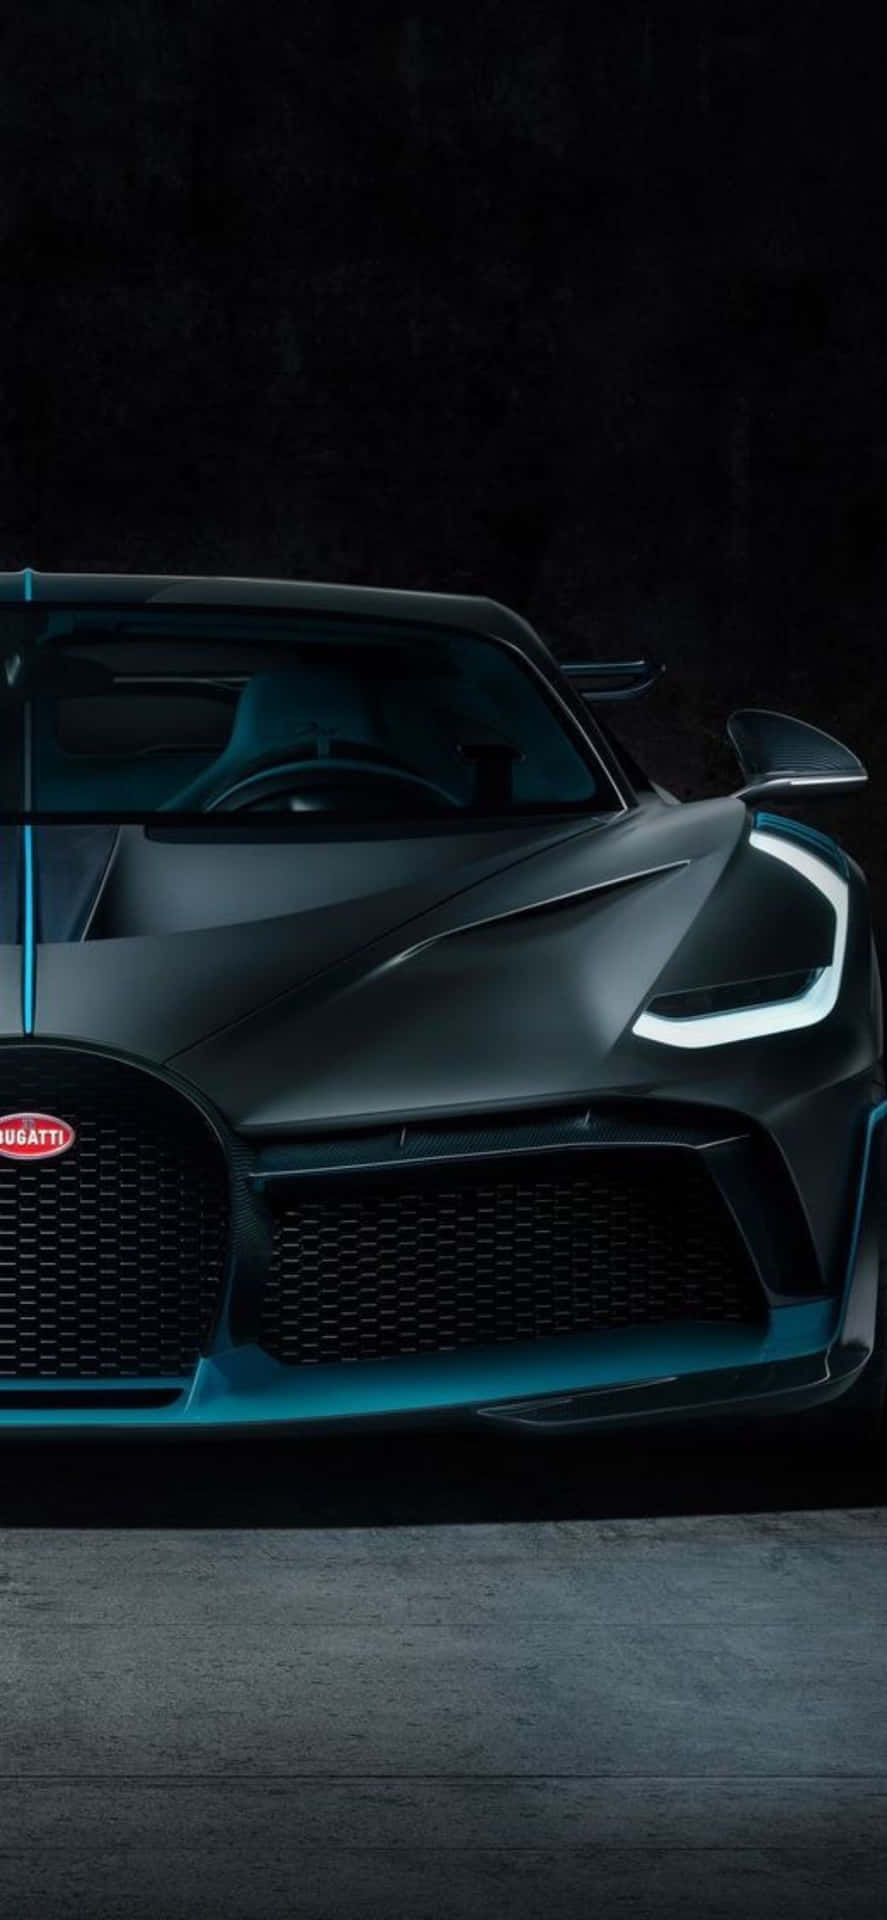 The Bugatti Chiron Is Shown In A Dark Room